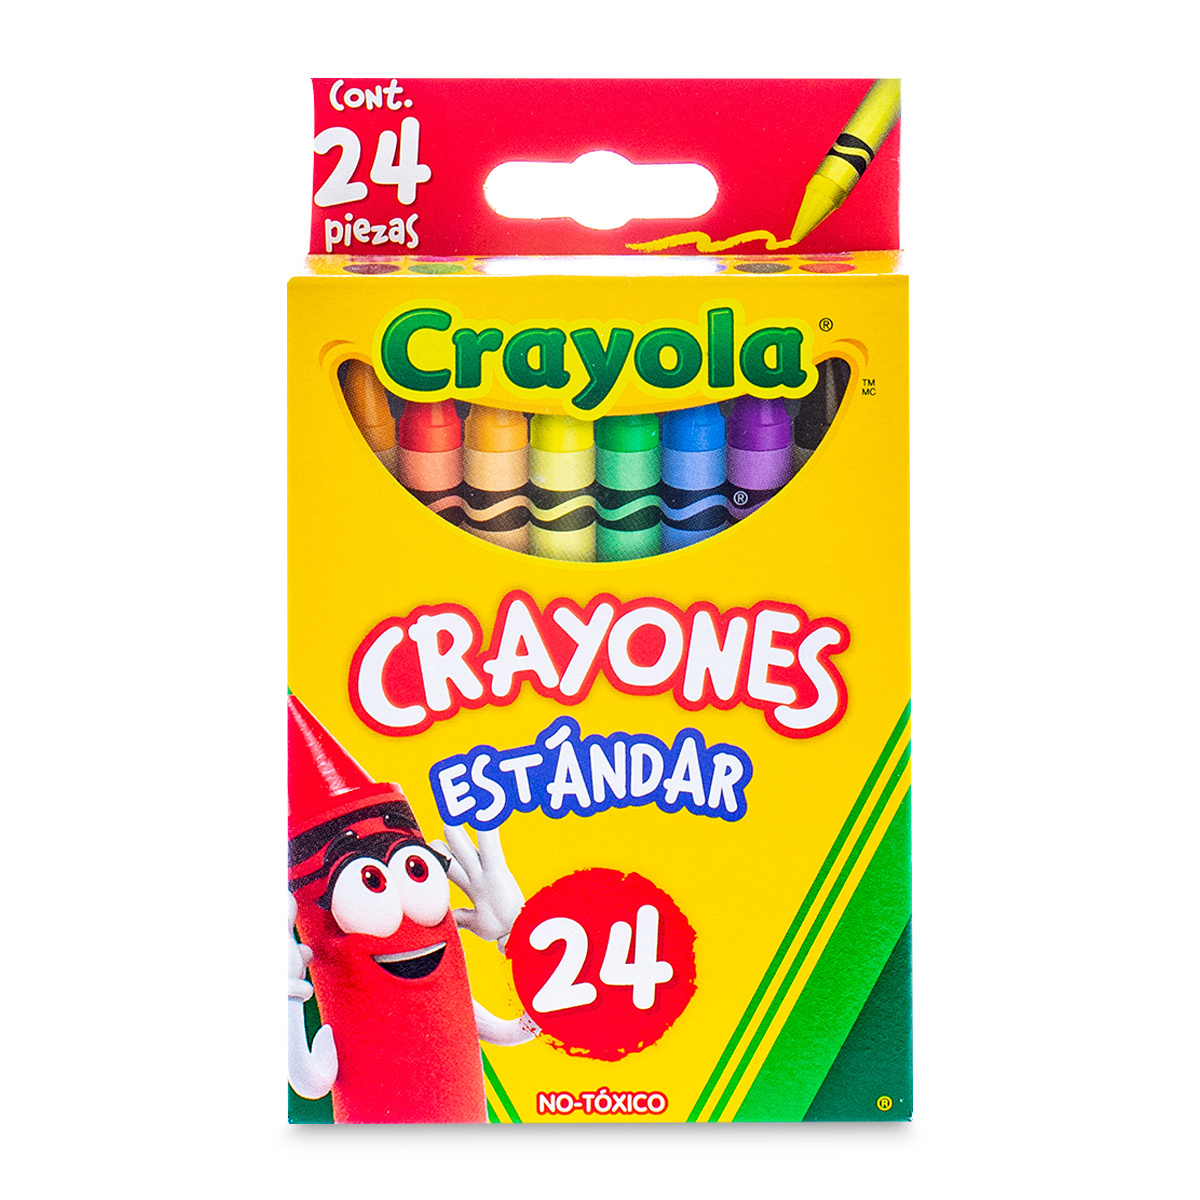 Crayones Estándar Crayola Colores 24 piezas